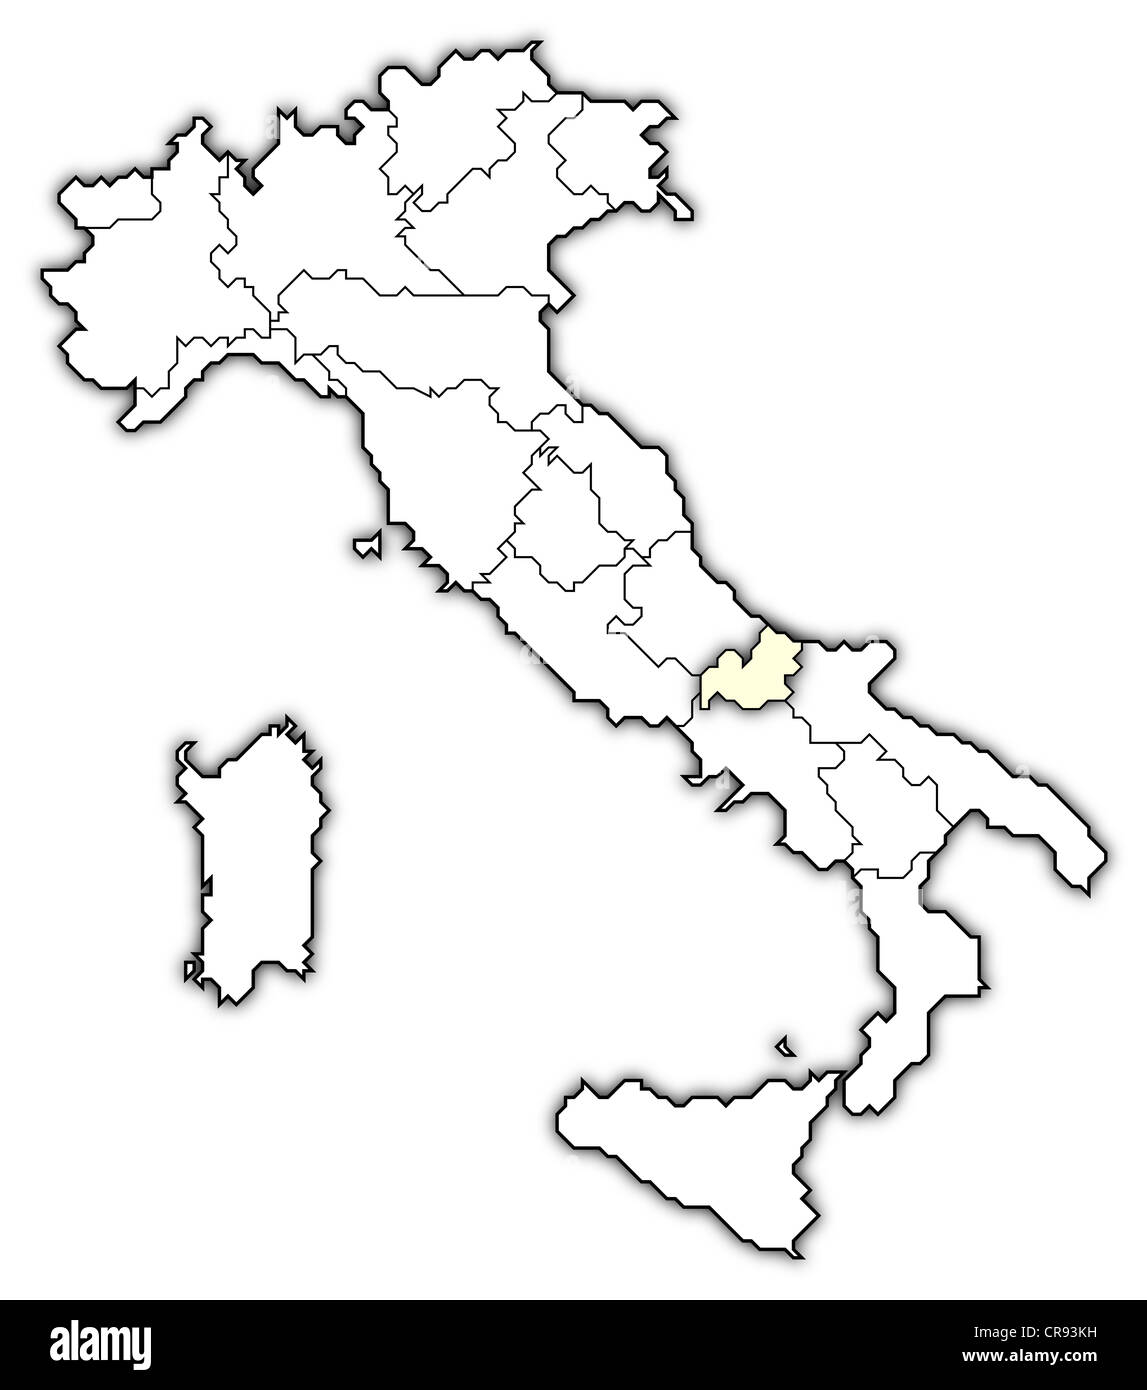 Mappa politica dell Italia con le diverse regioni dove il Molise è evidenziata. Foto Stock